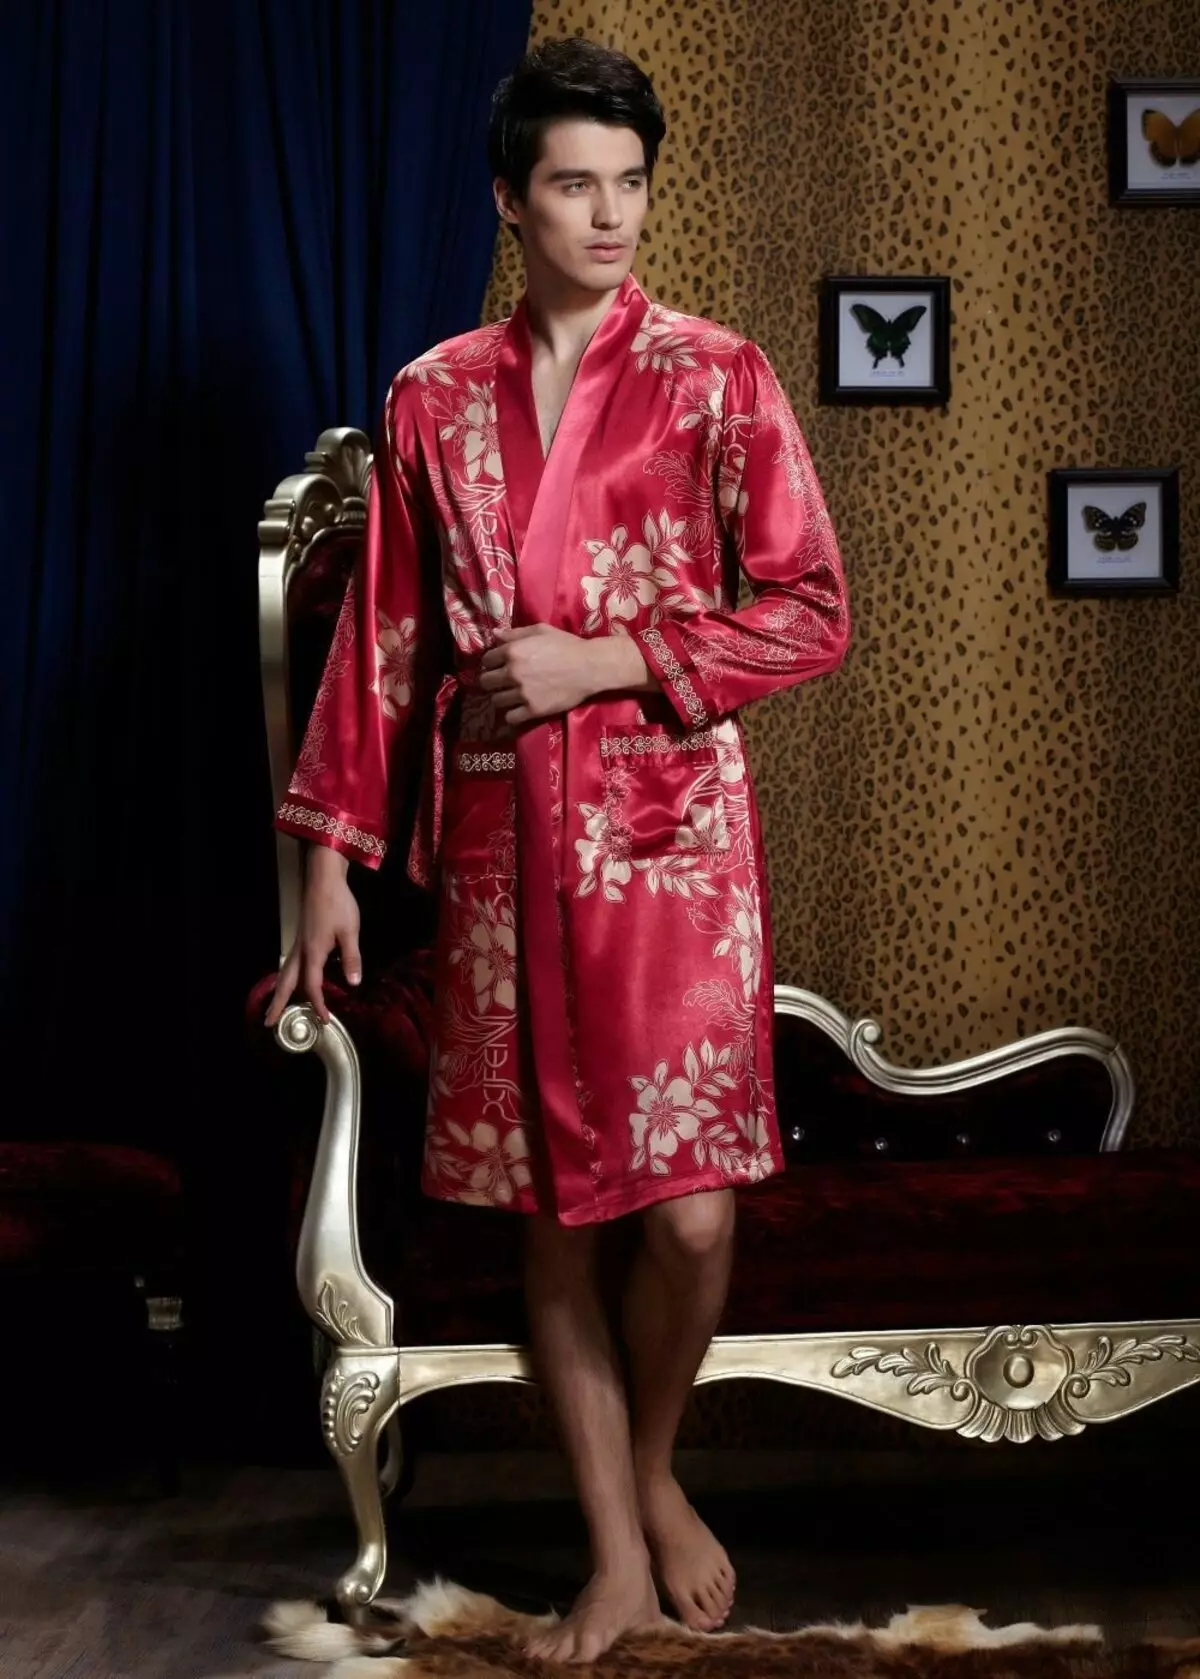 Kimono Bathrobe 59 Lluniau: Rhwymynnau Gwisgo Merched Beautiful yn Kimono Style, Siapan, Lace 1595_27